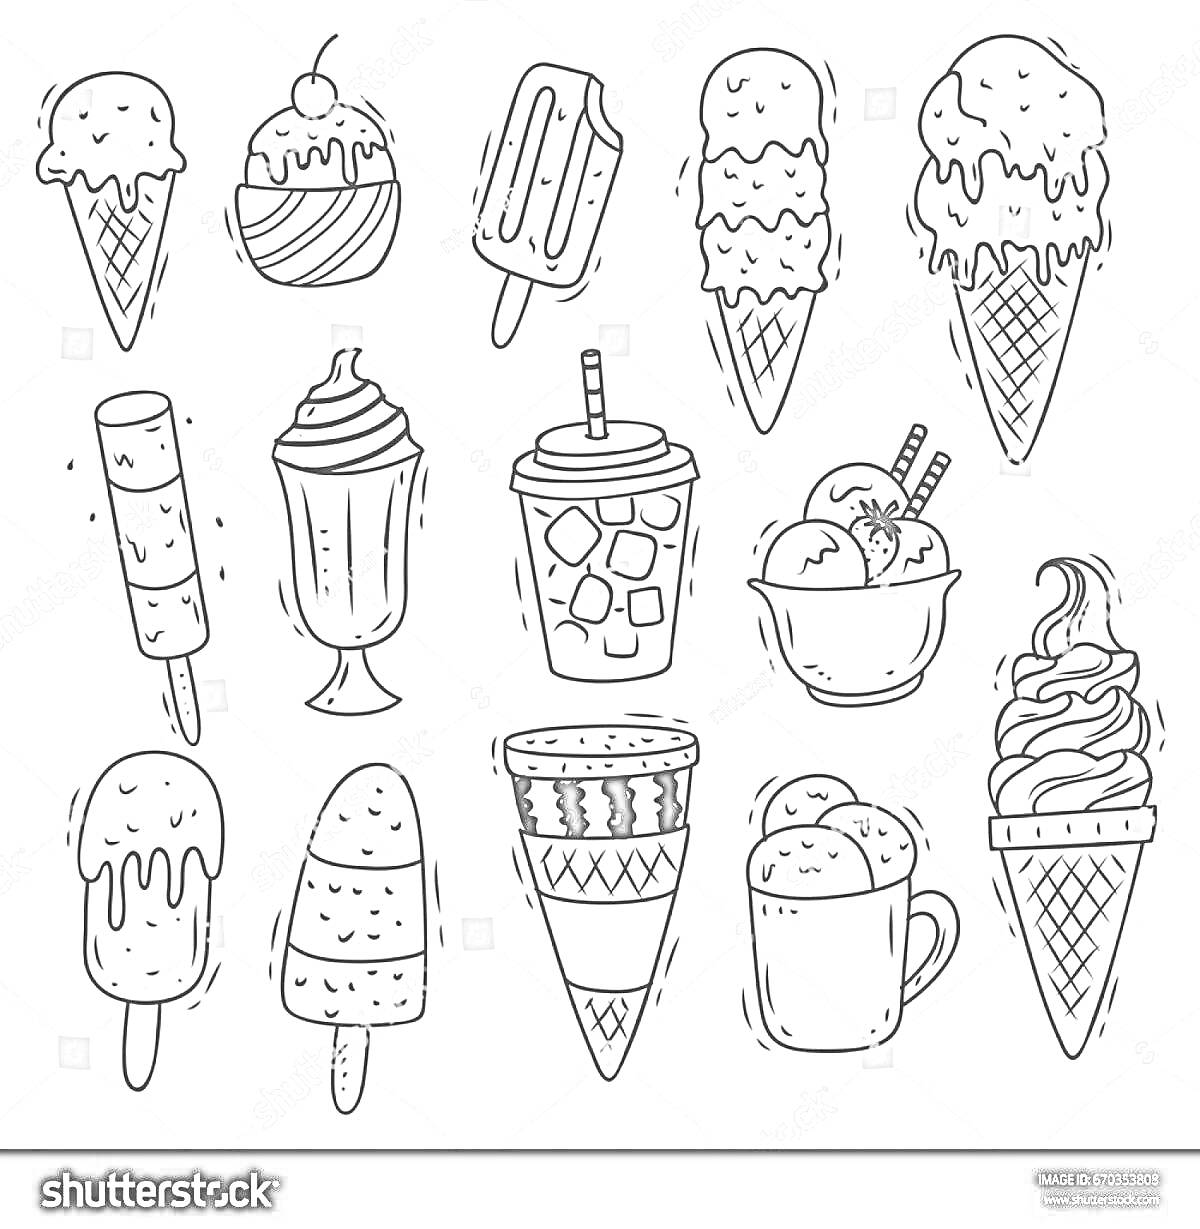 Раскраска Мороженое в вафельных рожках, эскимо на палочке, стакан с коктейлем и соломинкой, кружка с напитком, мороженое в стакане, мороженое в креманке